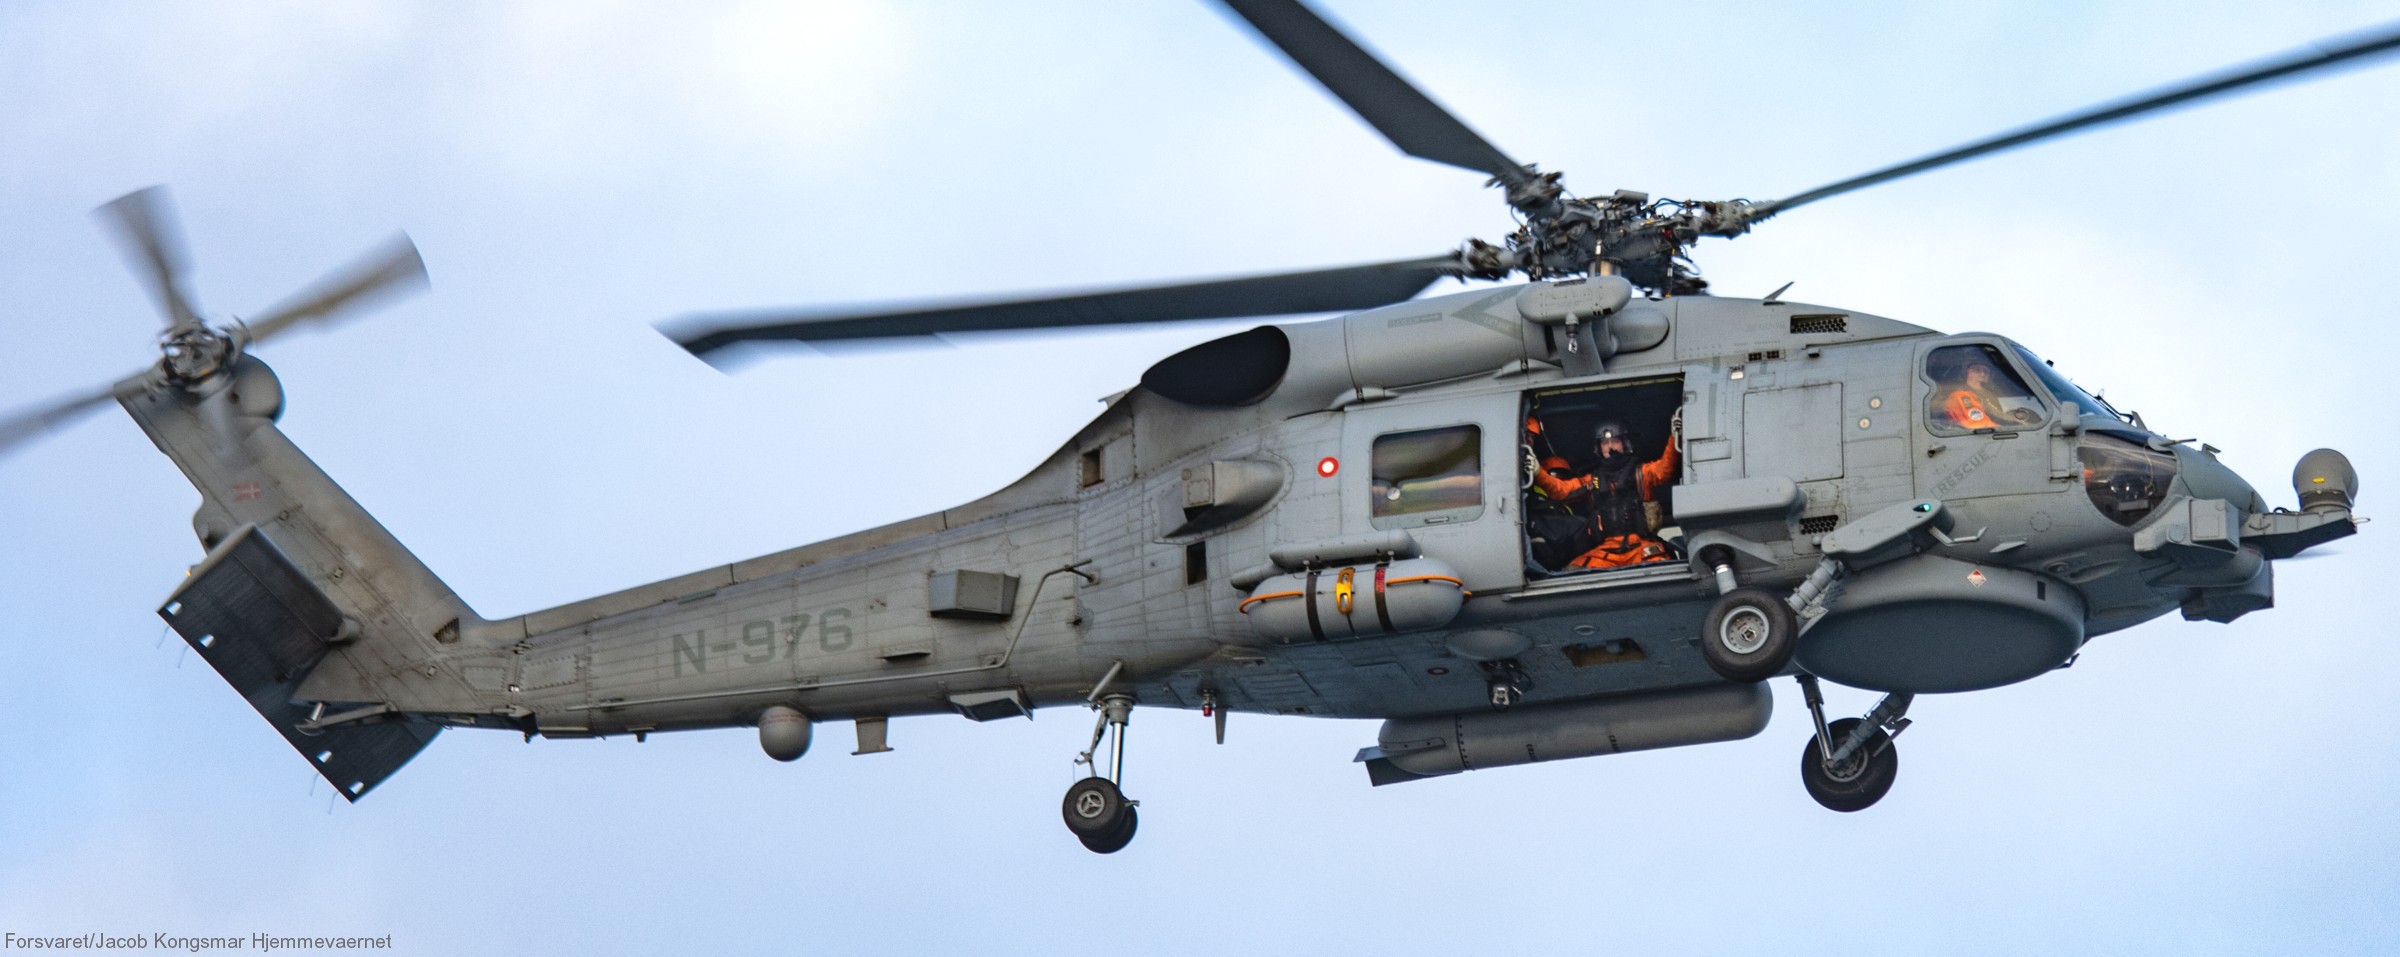 mh-60r seahawk royal danish navy air force flyvevåbnet kongelige danske marine sikorsky helicopter 723 eskadrille squadron karup 38